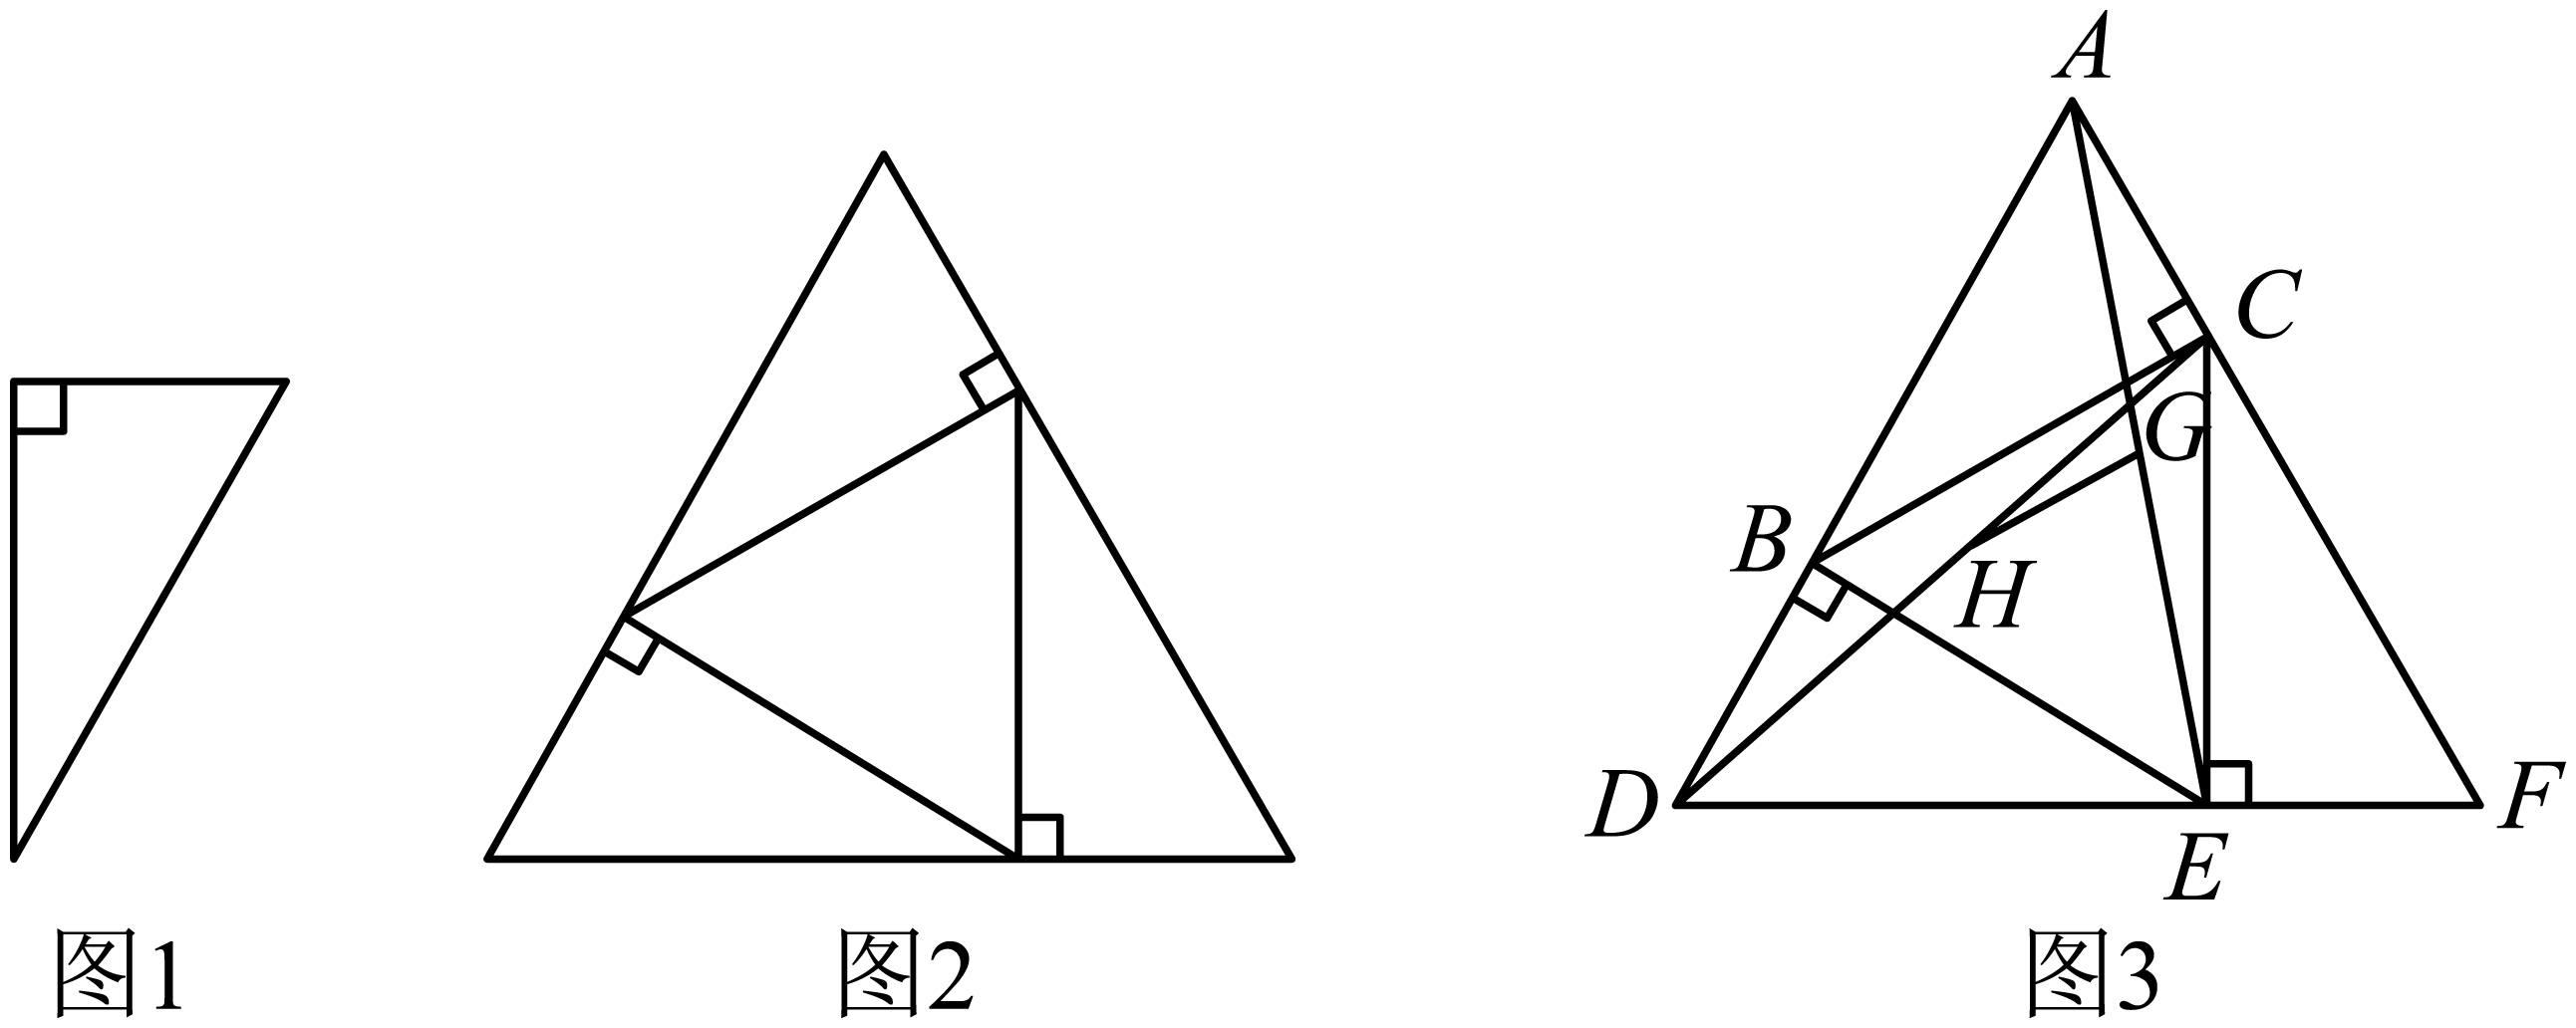 3个三角形拼成的图形图片